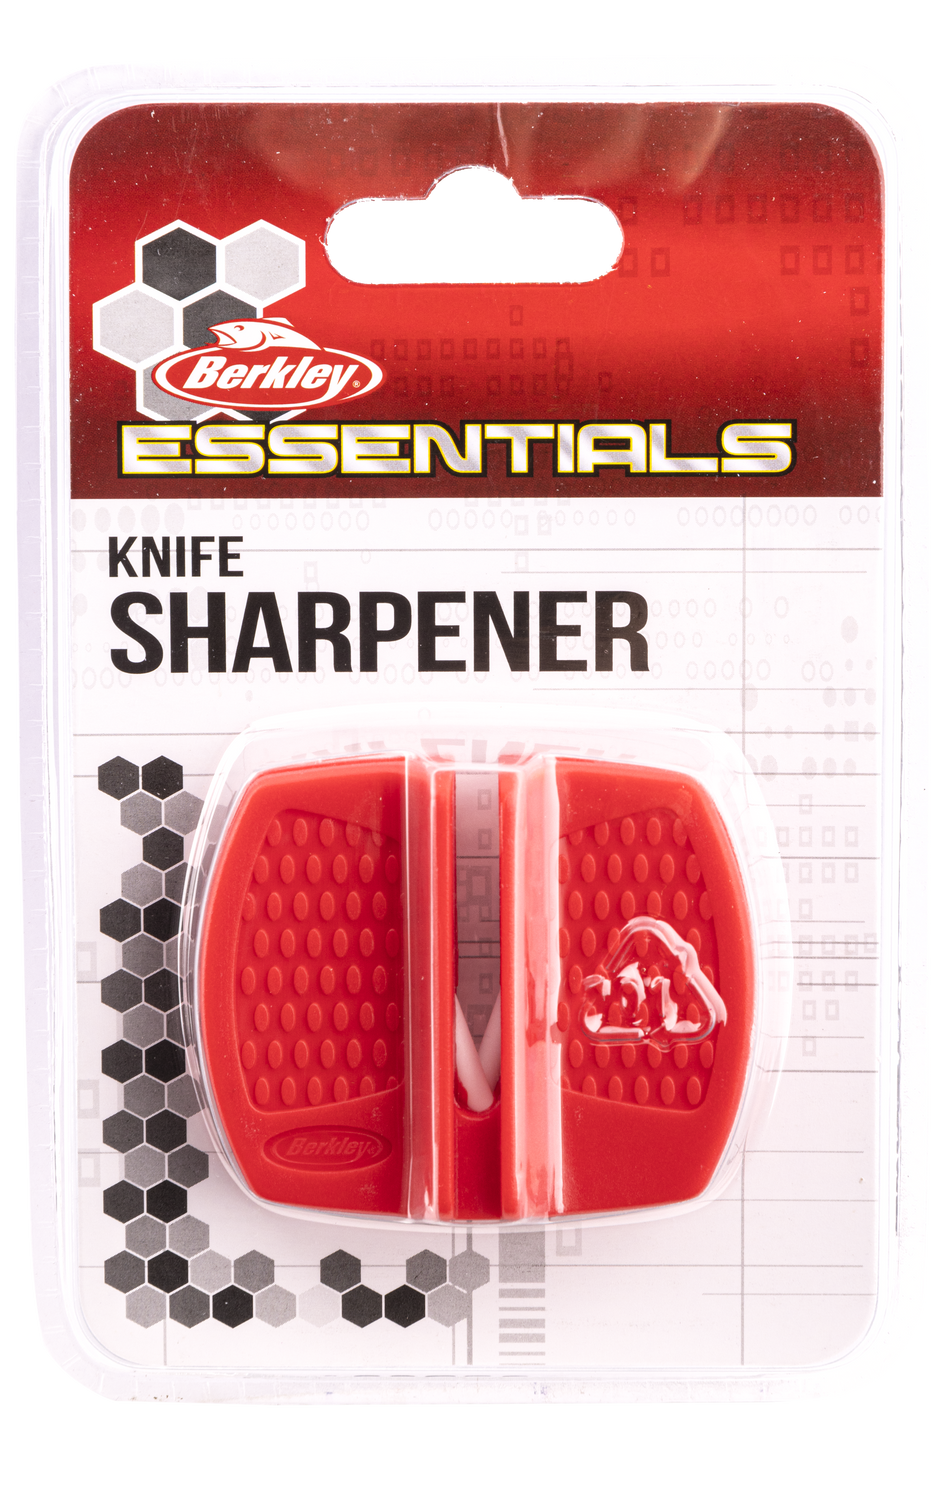 Berkley 1577542 New Essentials Knife Sharpener